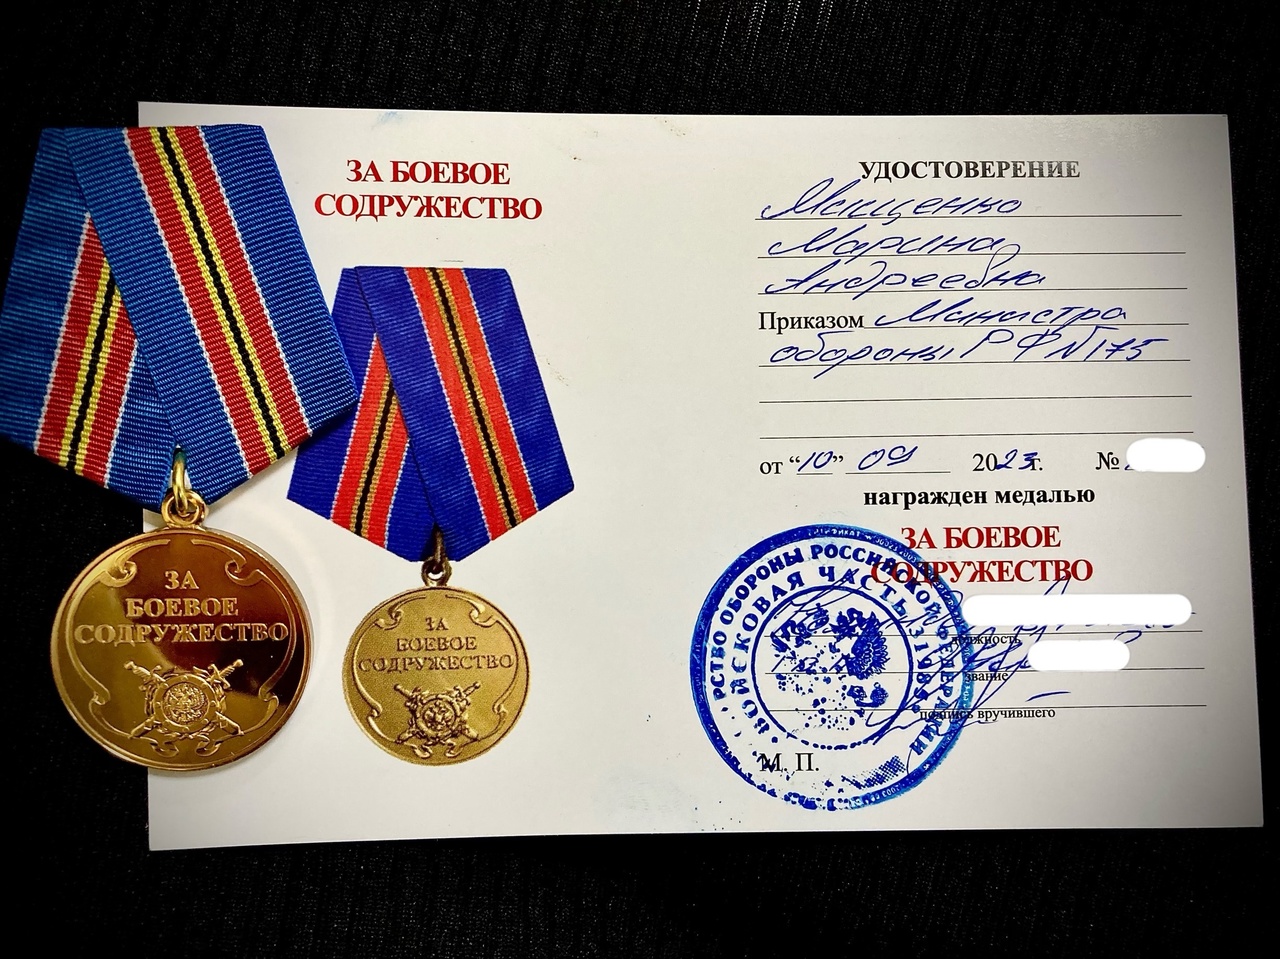 Волонтёр из Новозыбкова Марина Мищенко получила медаль Минобороны